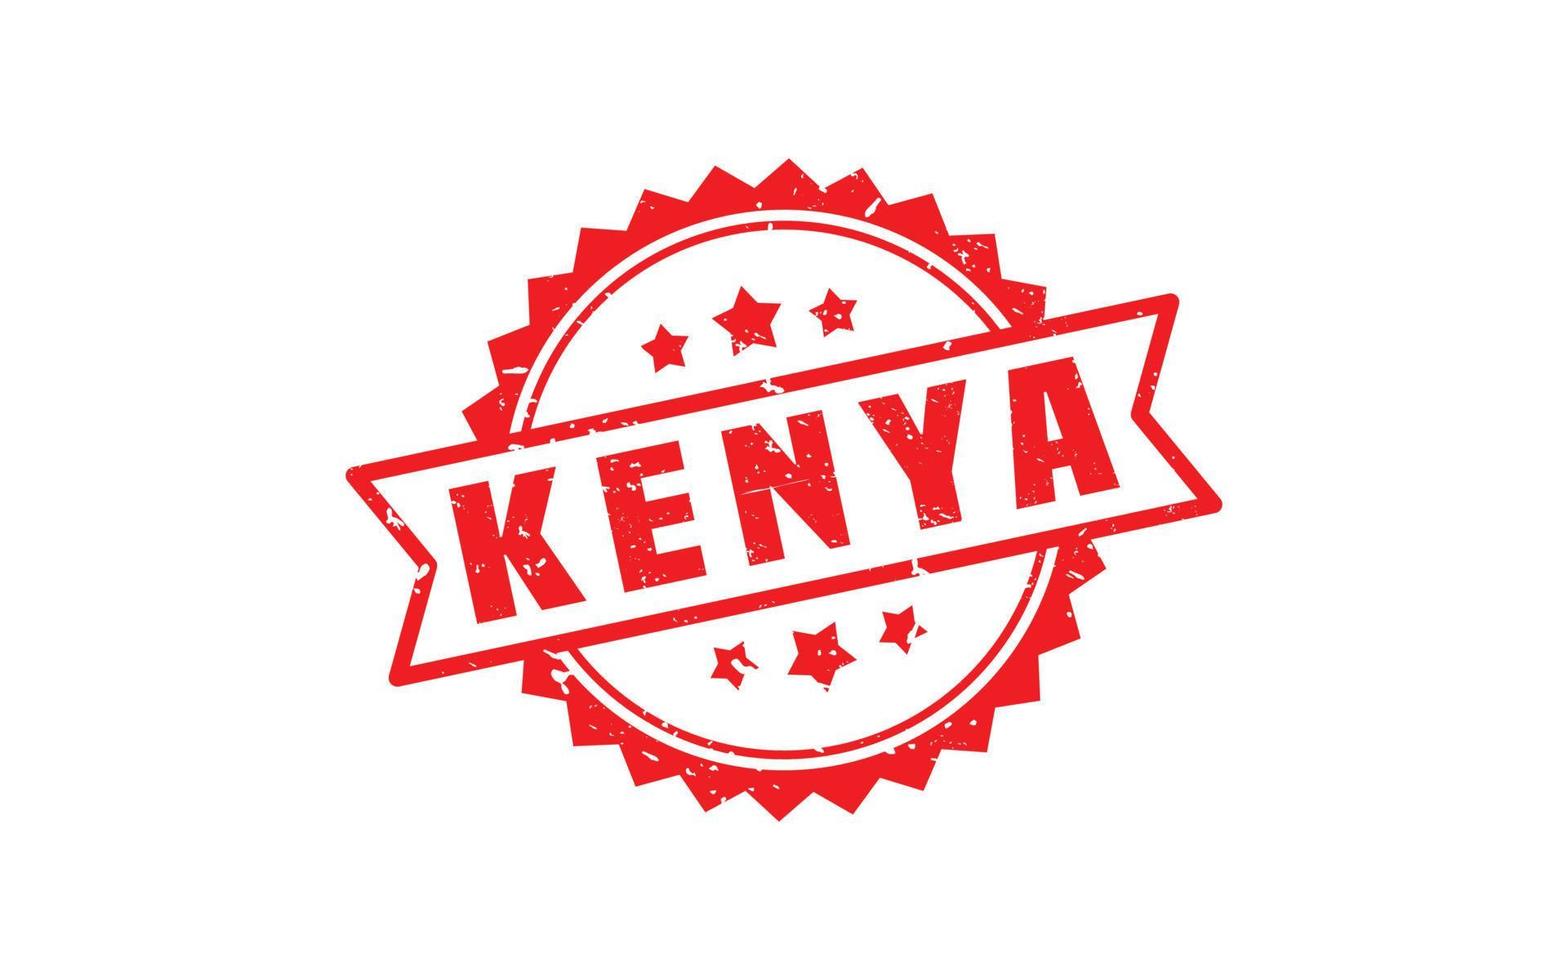 kenya timbre en caoutchouc avec style grunge sur fond blanc vecteur